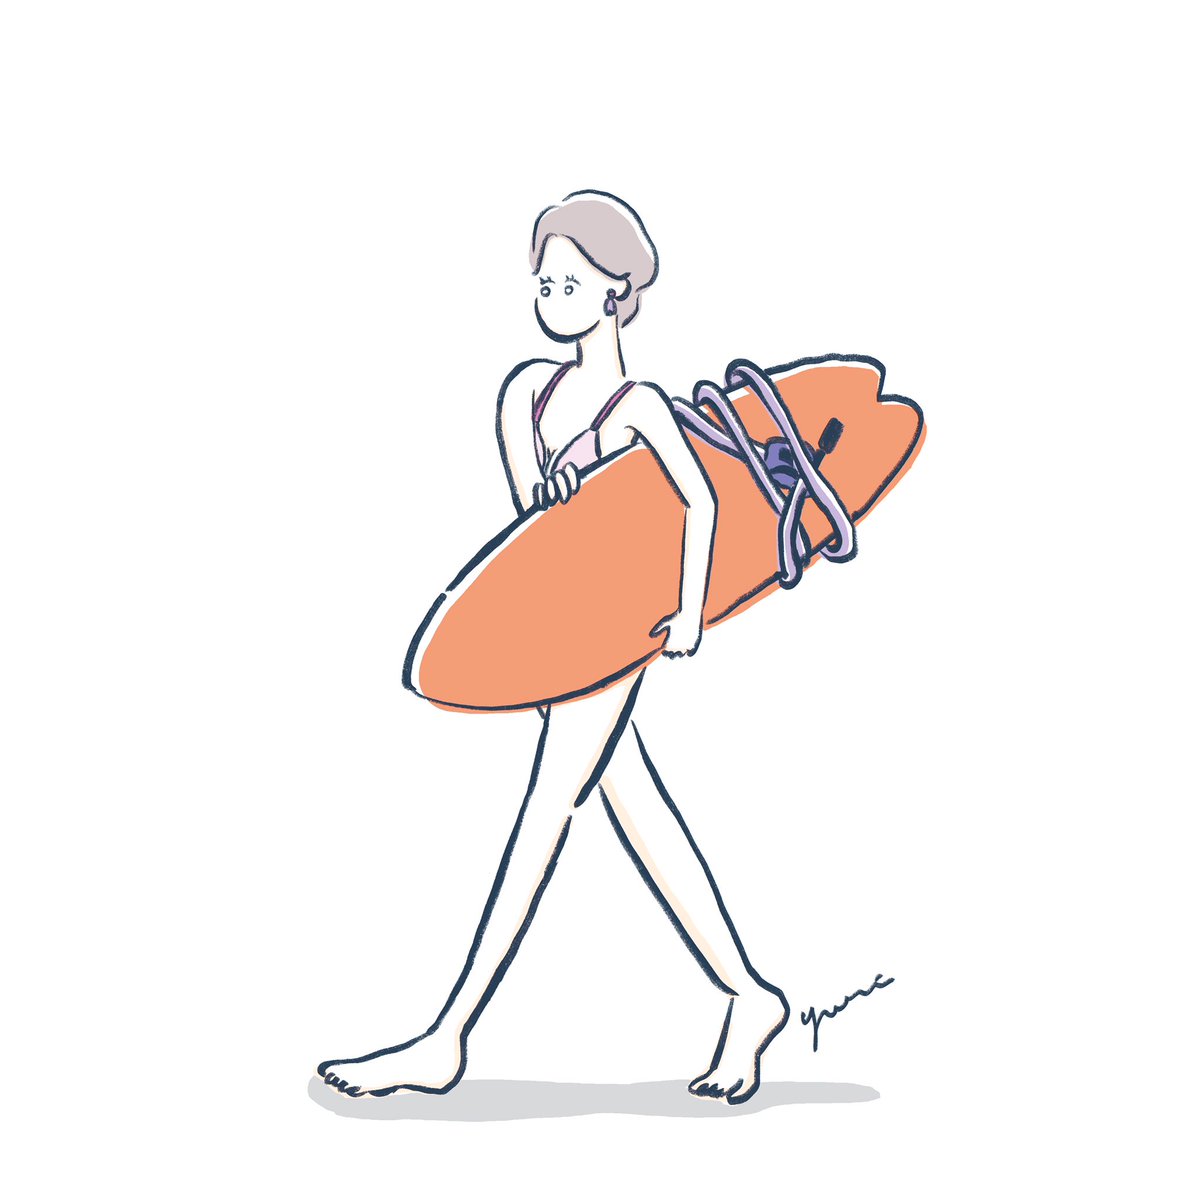 まつもとゆり A Twitter サーフボードは大きくて重くて 運ぶのもひと苦労 ボードを持って歩く女の子をいろいろ描いたので少しずつ載せていきます その4 Adobefresco Girlsillustration ガールズイラスト イラスト サーフガール サーフィン女子